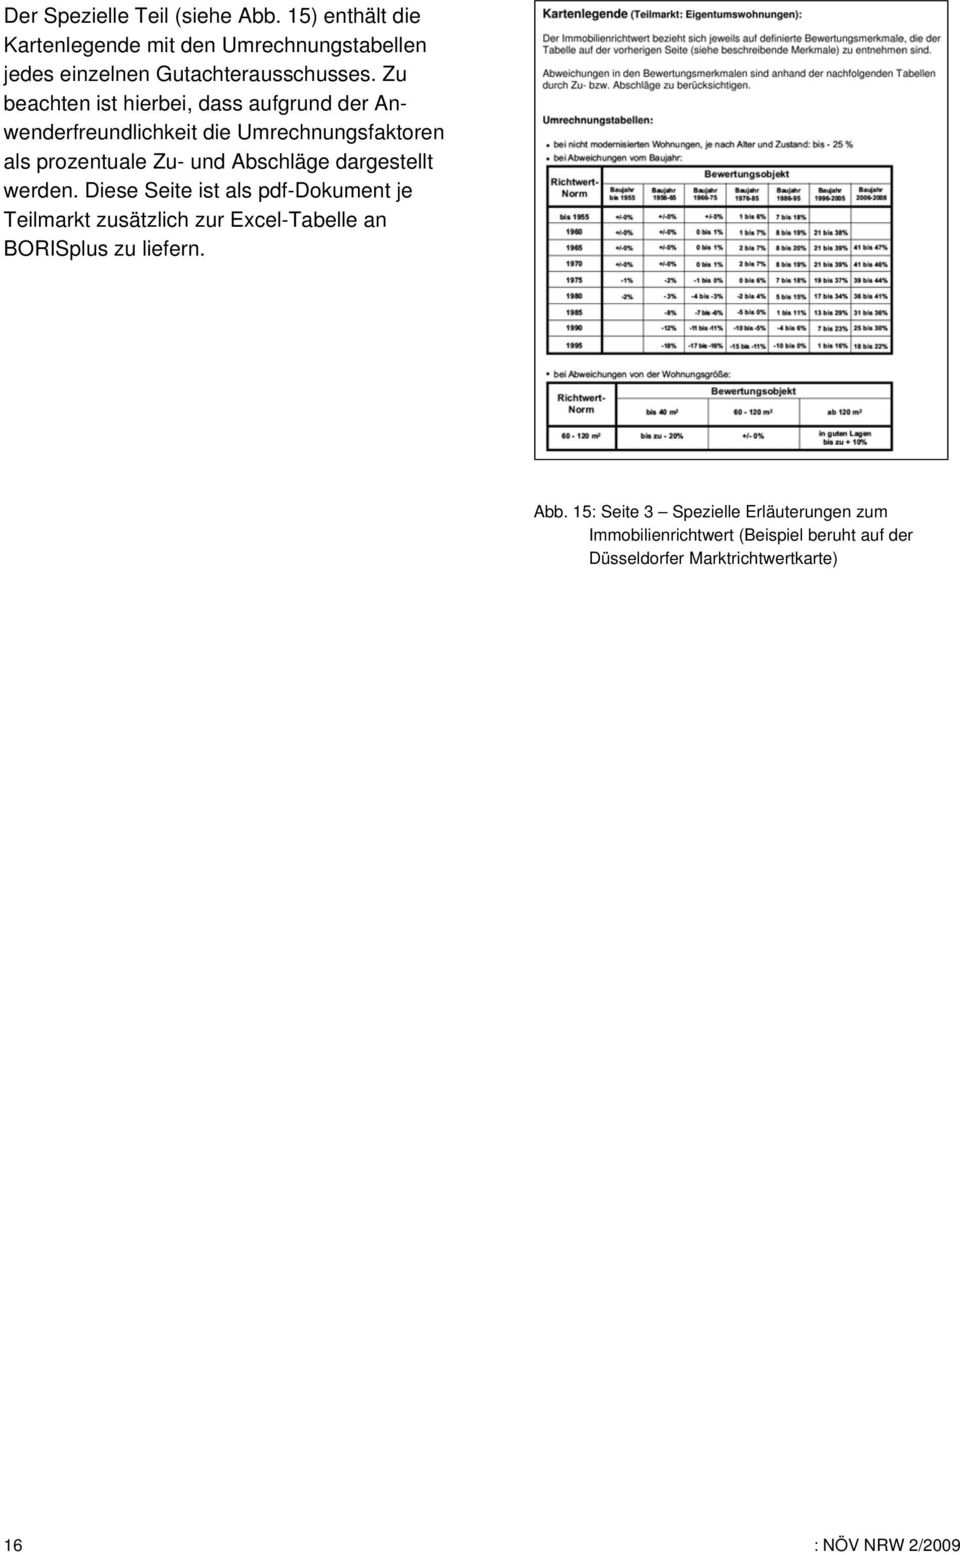 dargestellt werden. Diese Seite ist als pdf-dokument je Teilmarkt zusätzlich zur Excel-Tabelle an BORISplus zu liefern. Abb.